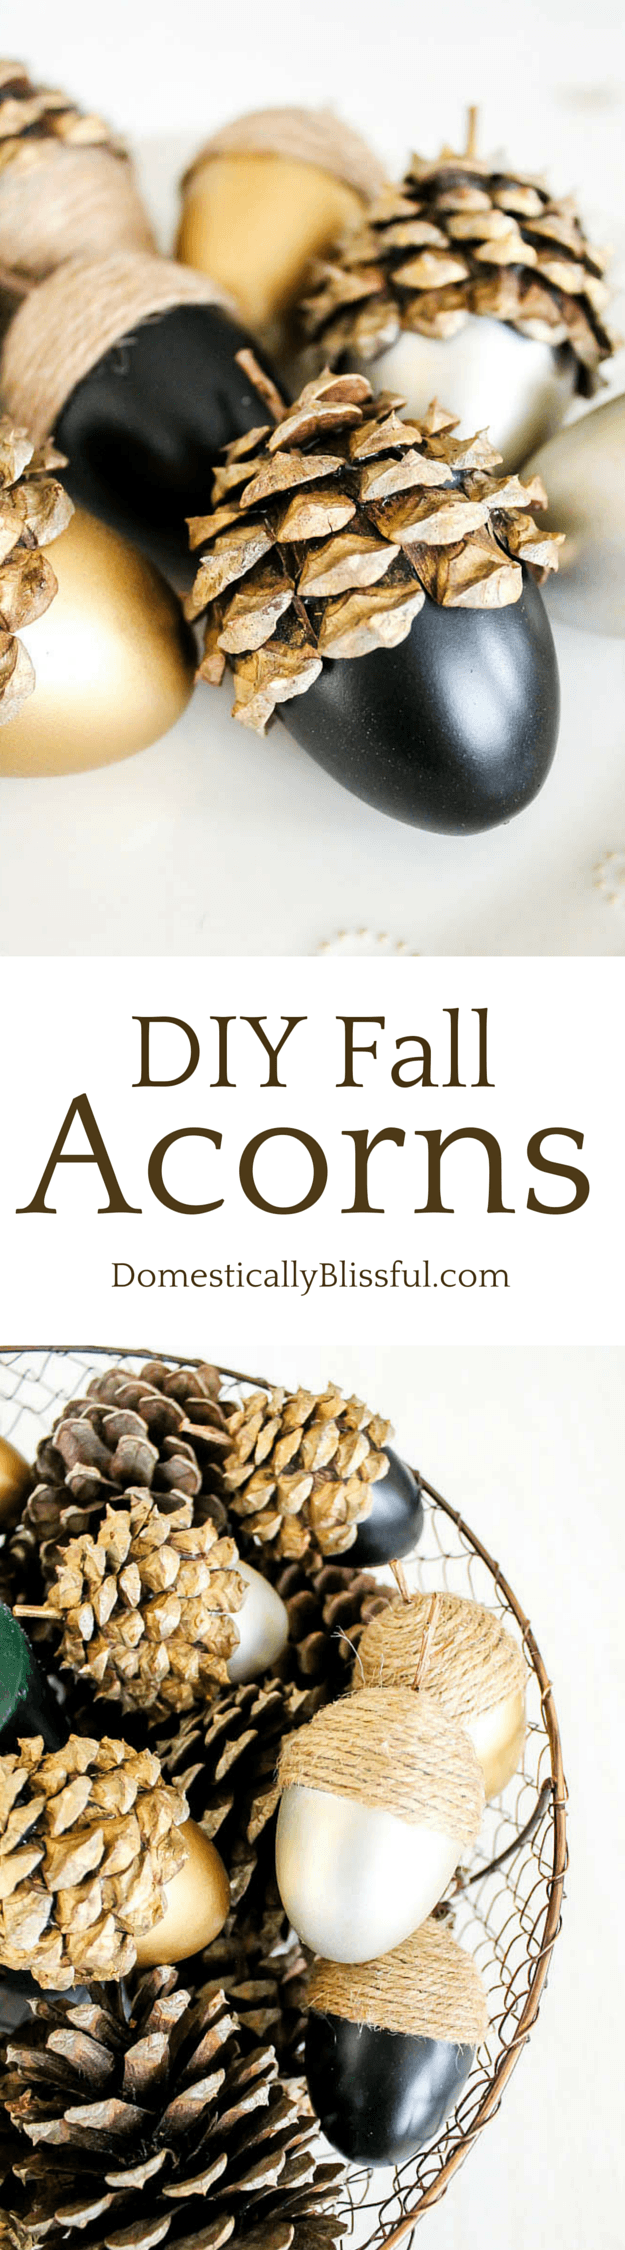 DIY Fall Acorns